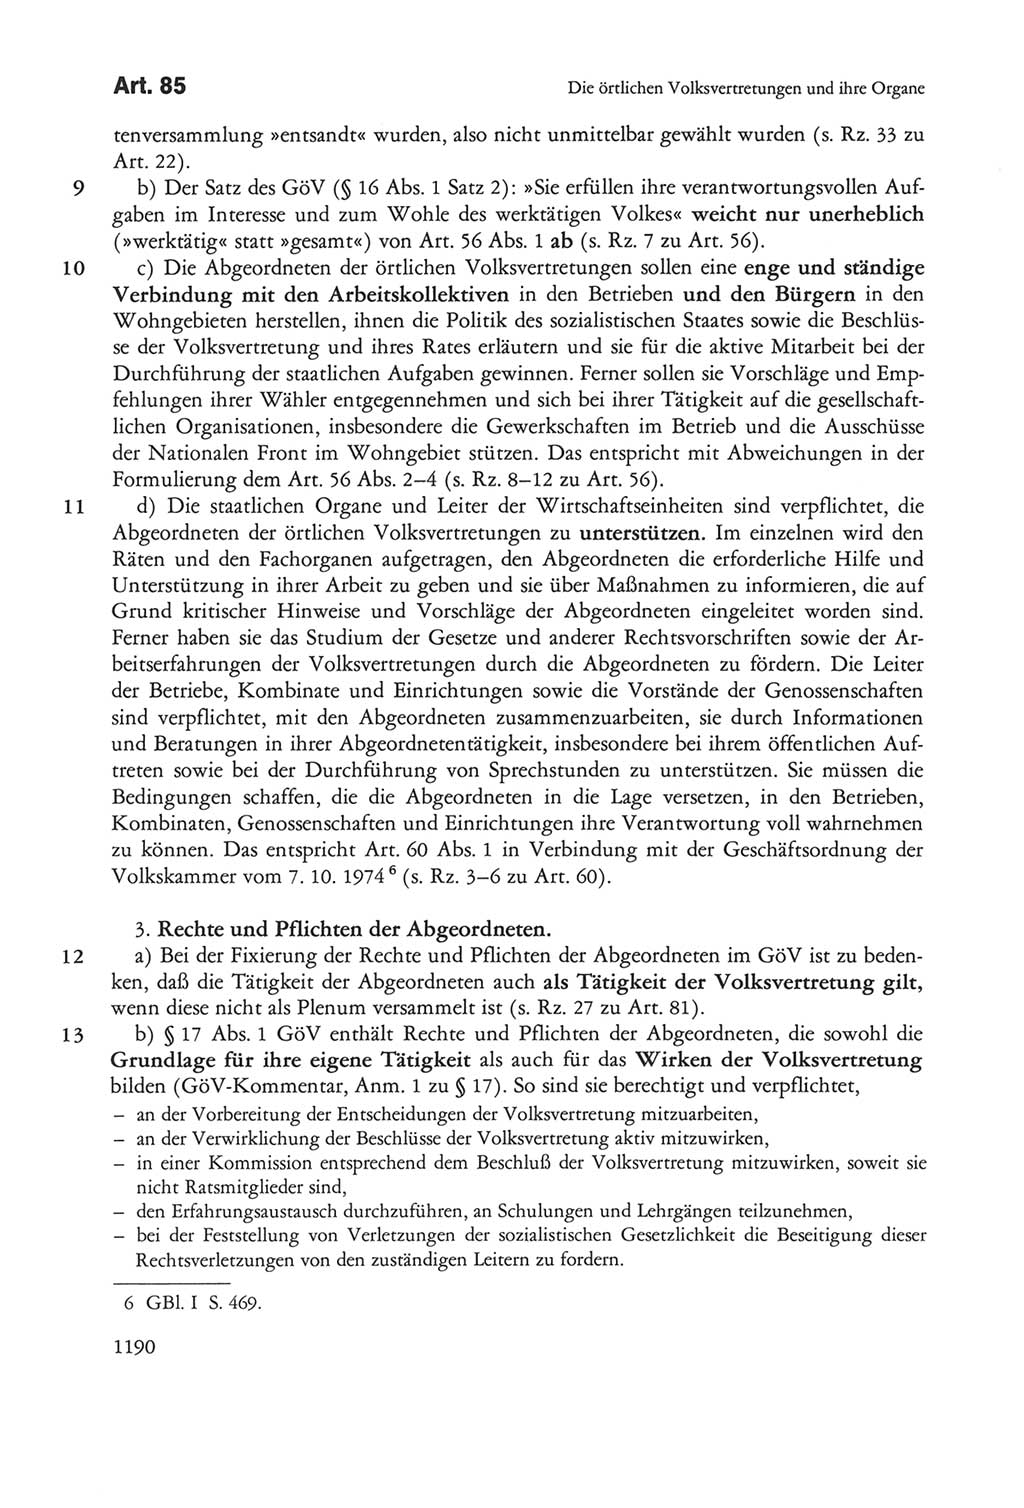 Die sozialistische Verfassung der Deutschen Demokratischen Republik (DDR), Kommentar mit einem Nachtrag 1997, Seite 1190 (Soz. Verf. DDR Komm. Nachtr. 1997, S. 1190)